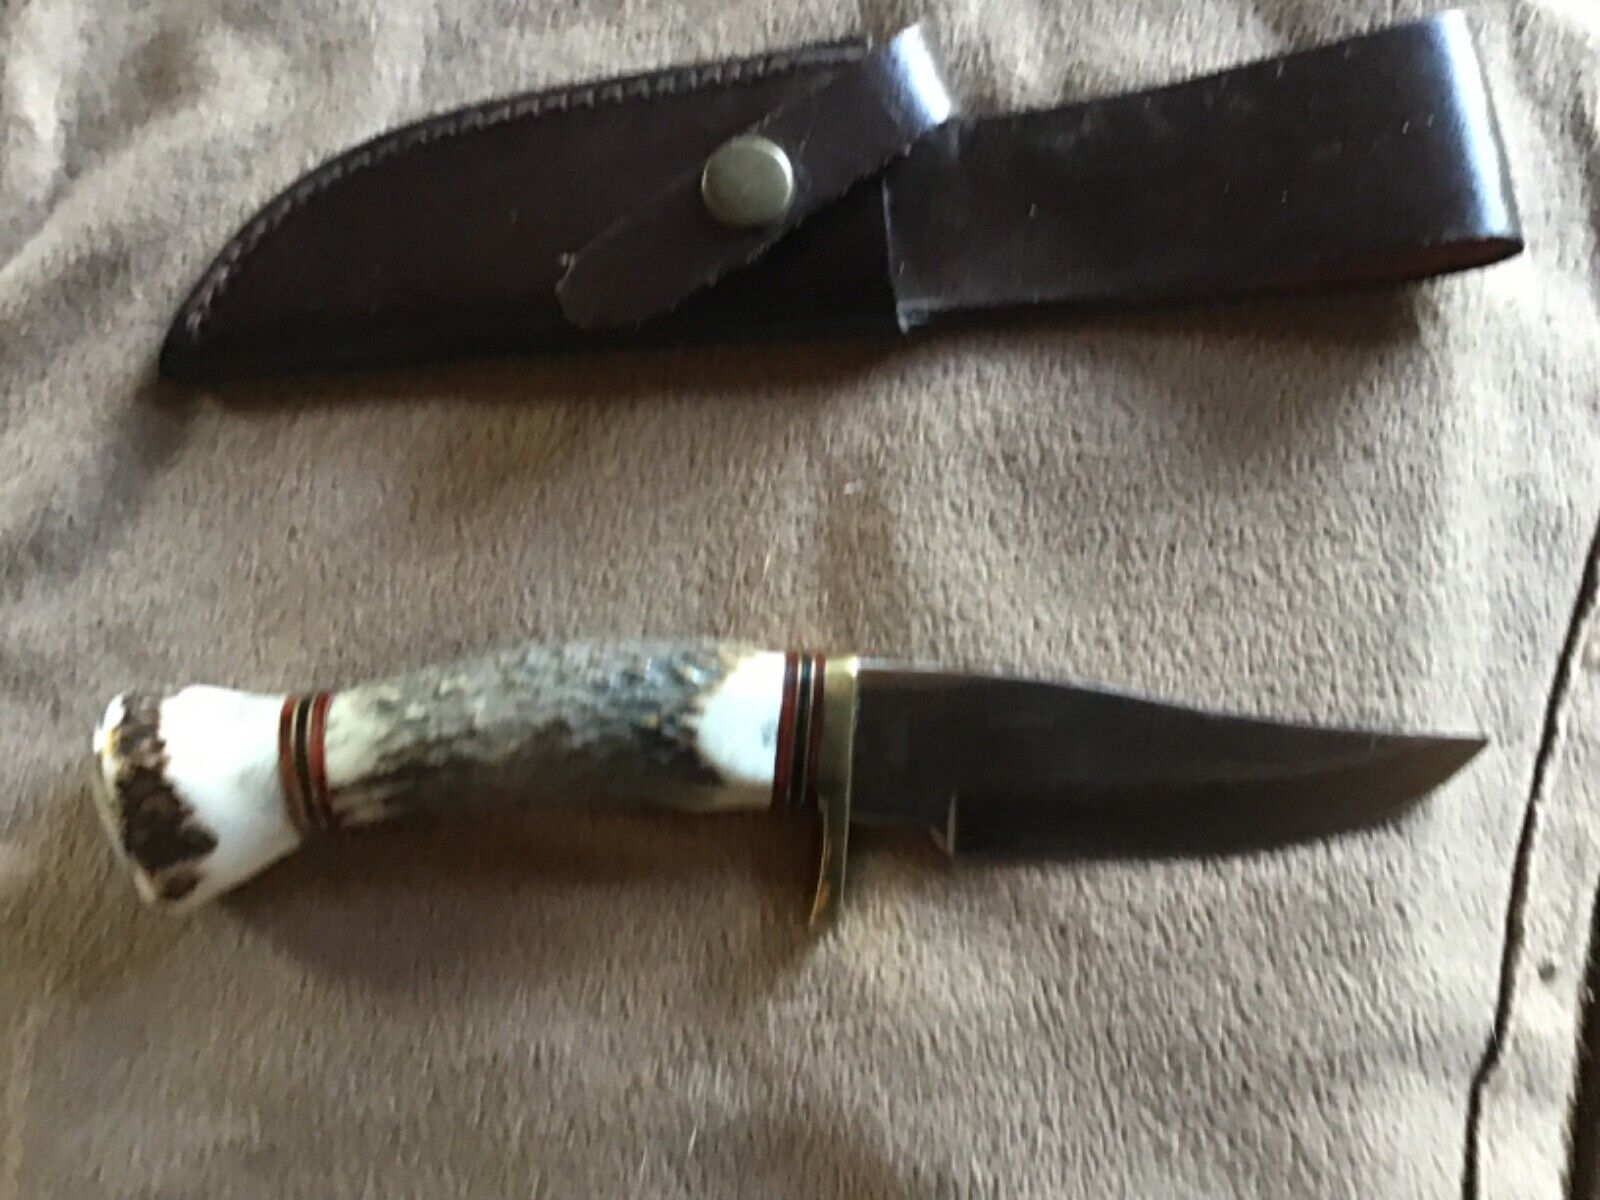 Deer antler knife and case